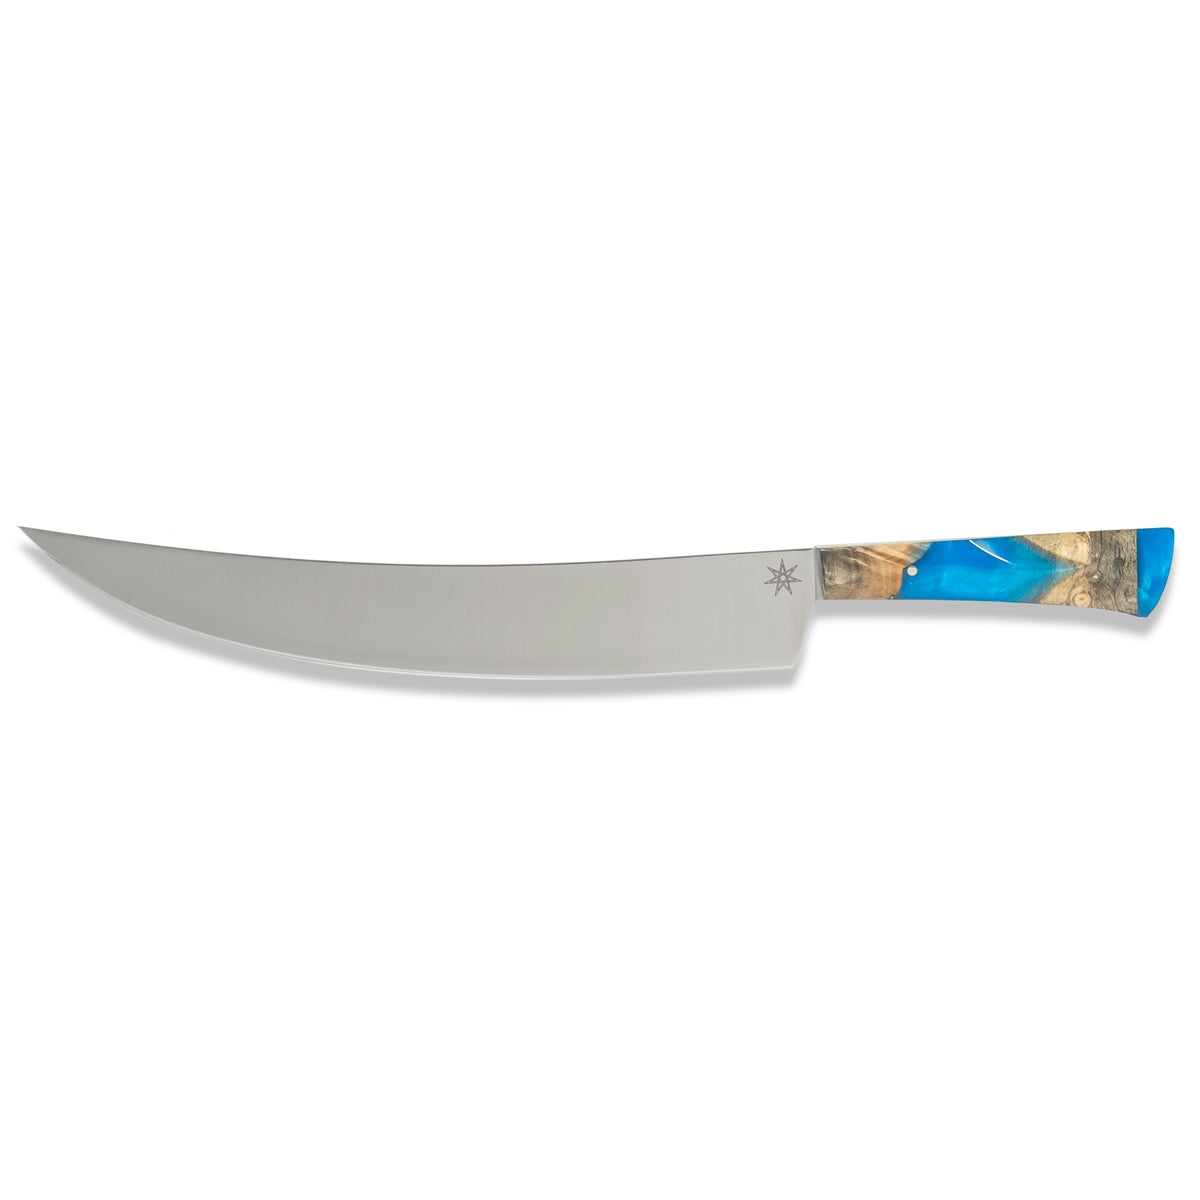 Misen MK-1033-2 Serrated Bread Knife, 9.5 Inch Bread Cutter, Blue 